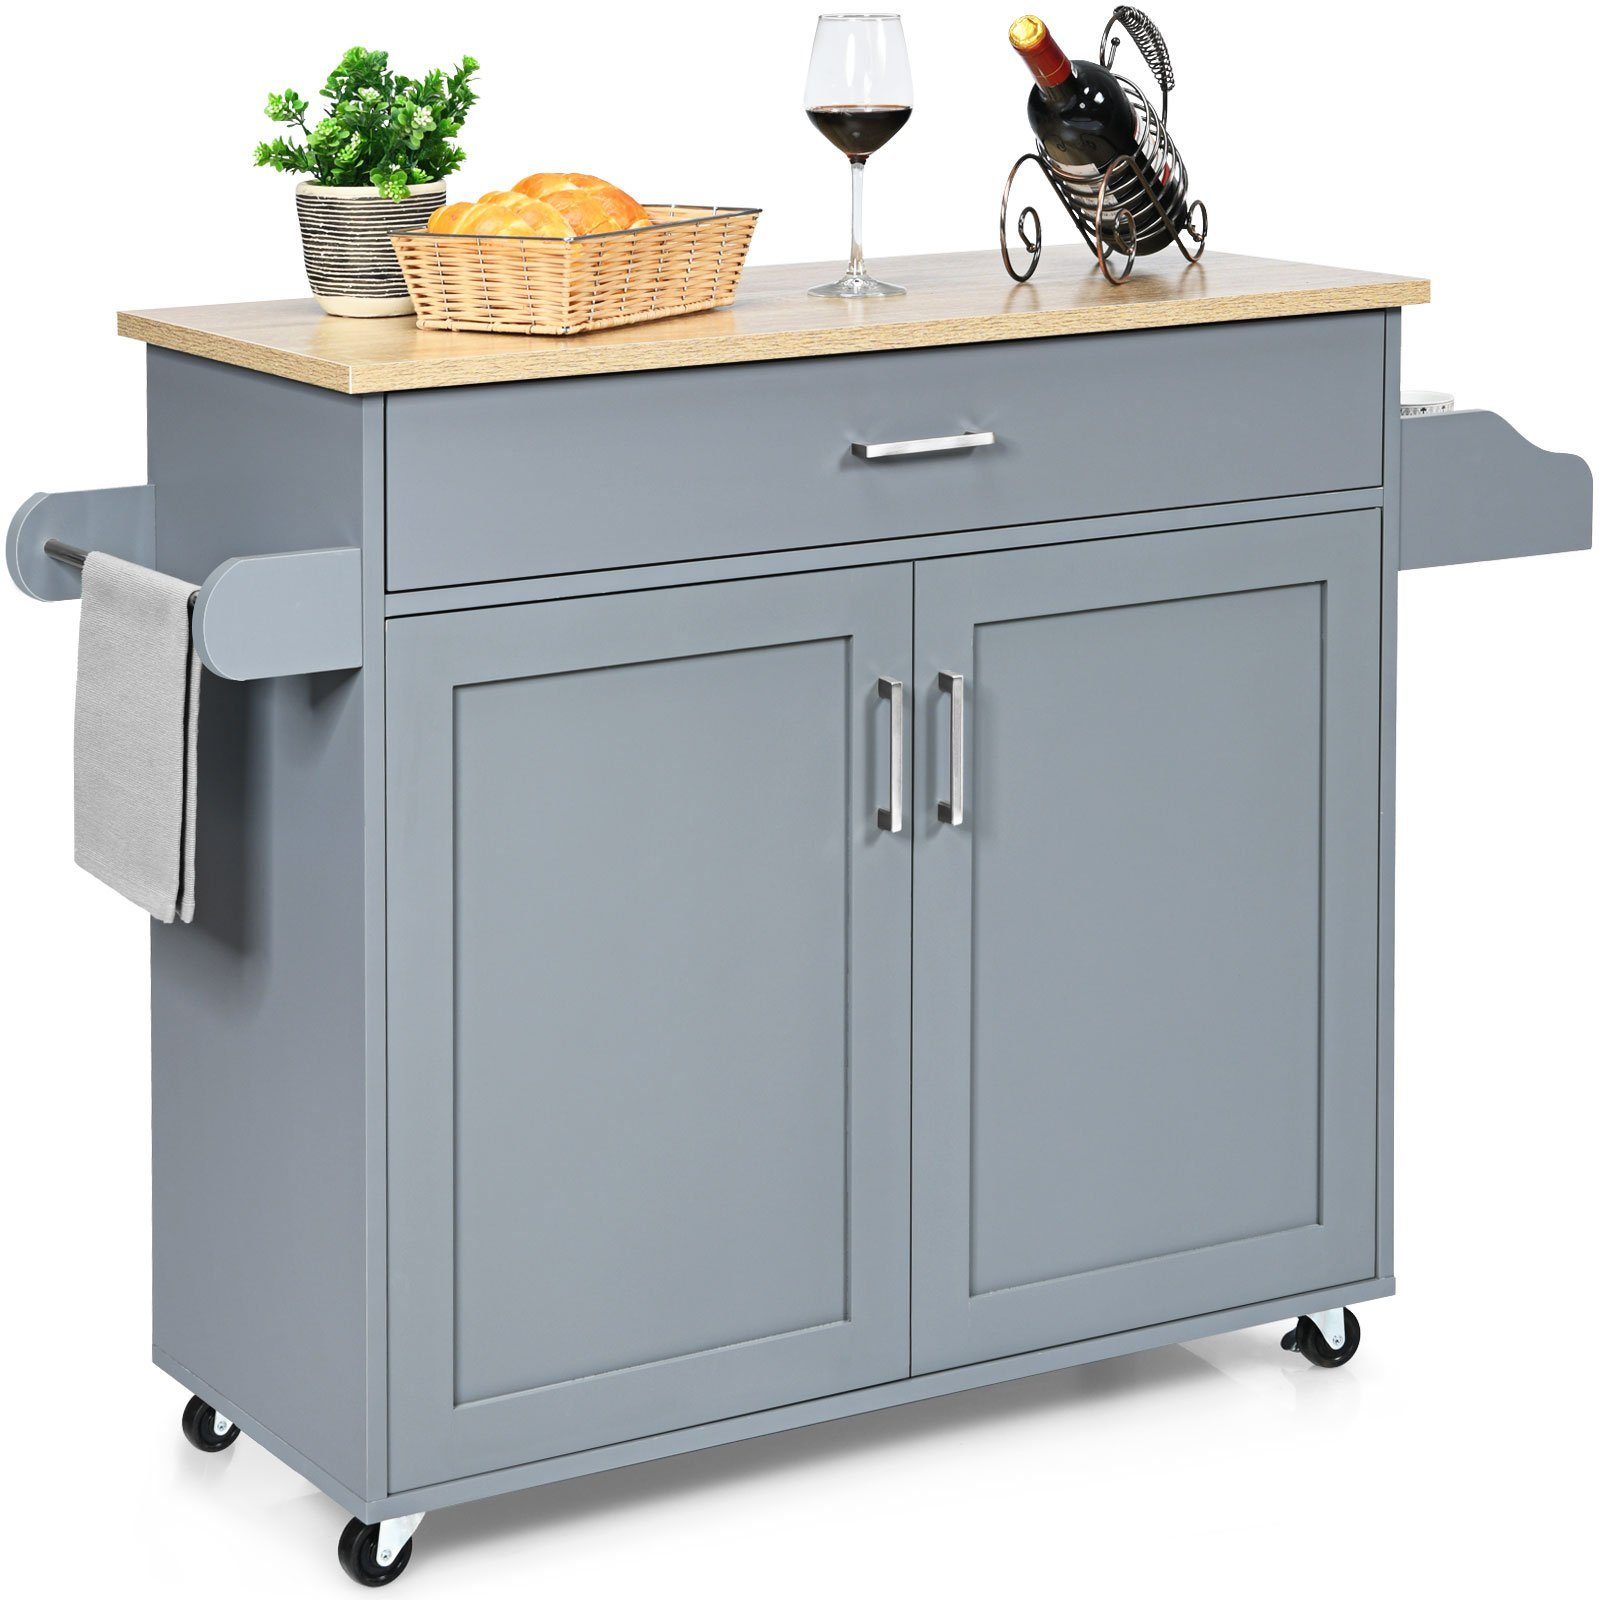 COSTWAY Küchenwagen, mit Handtuchhalter, Gewürzboard & Ablage, rollbar Grau